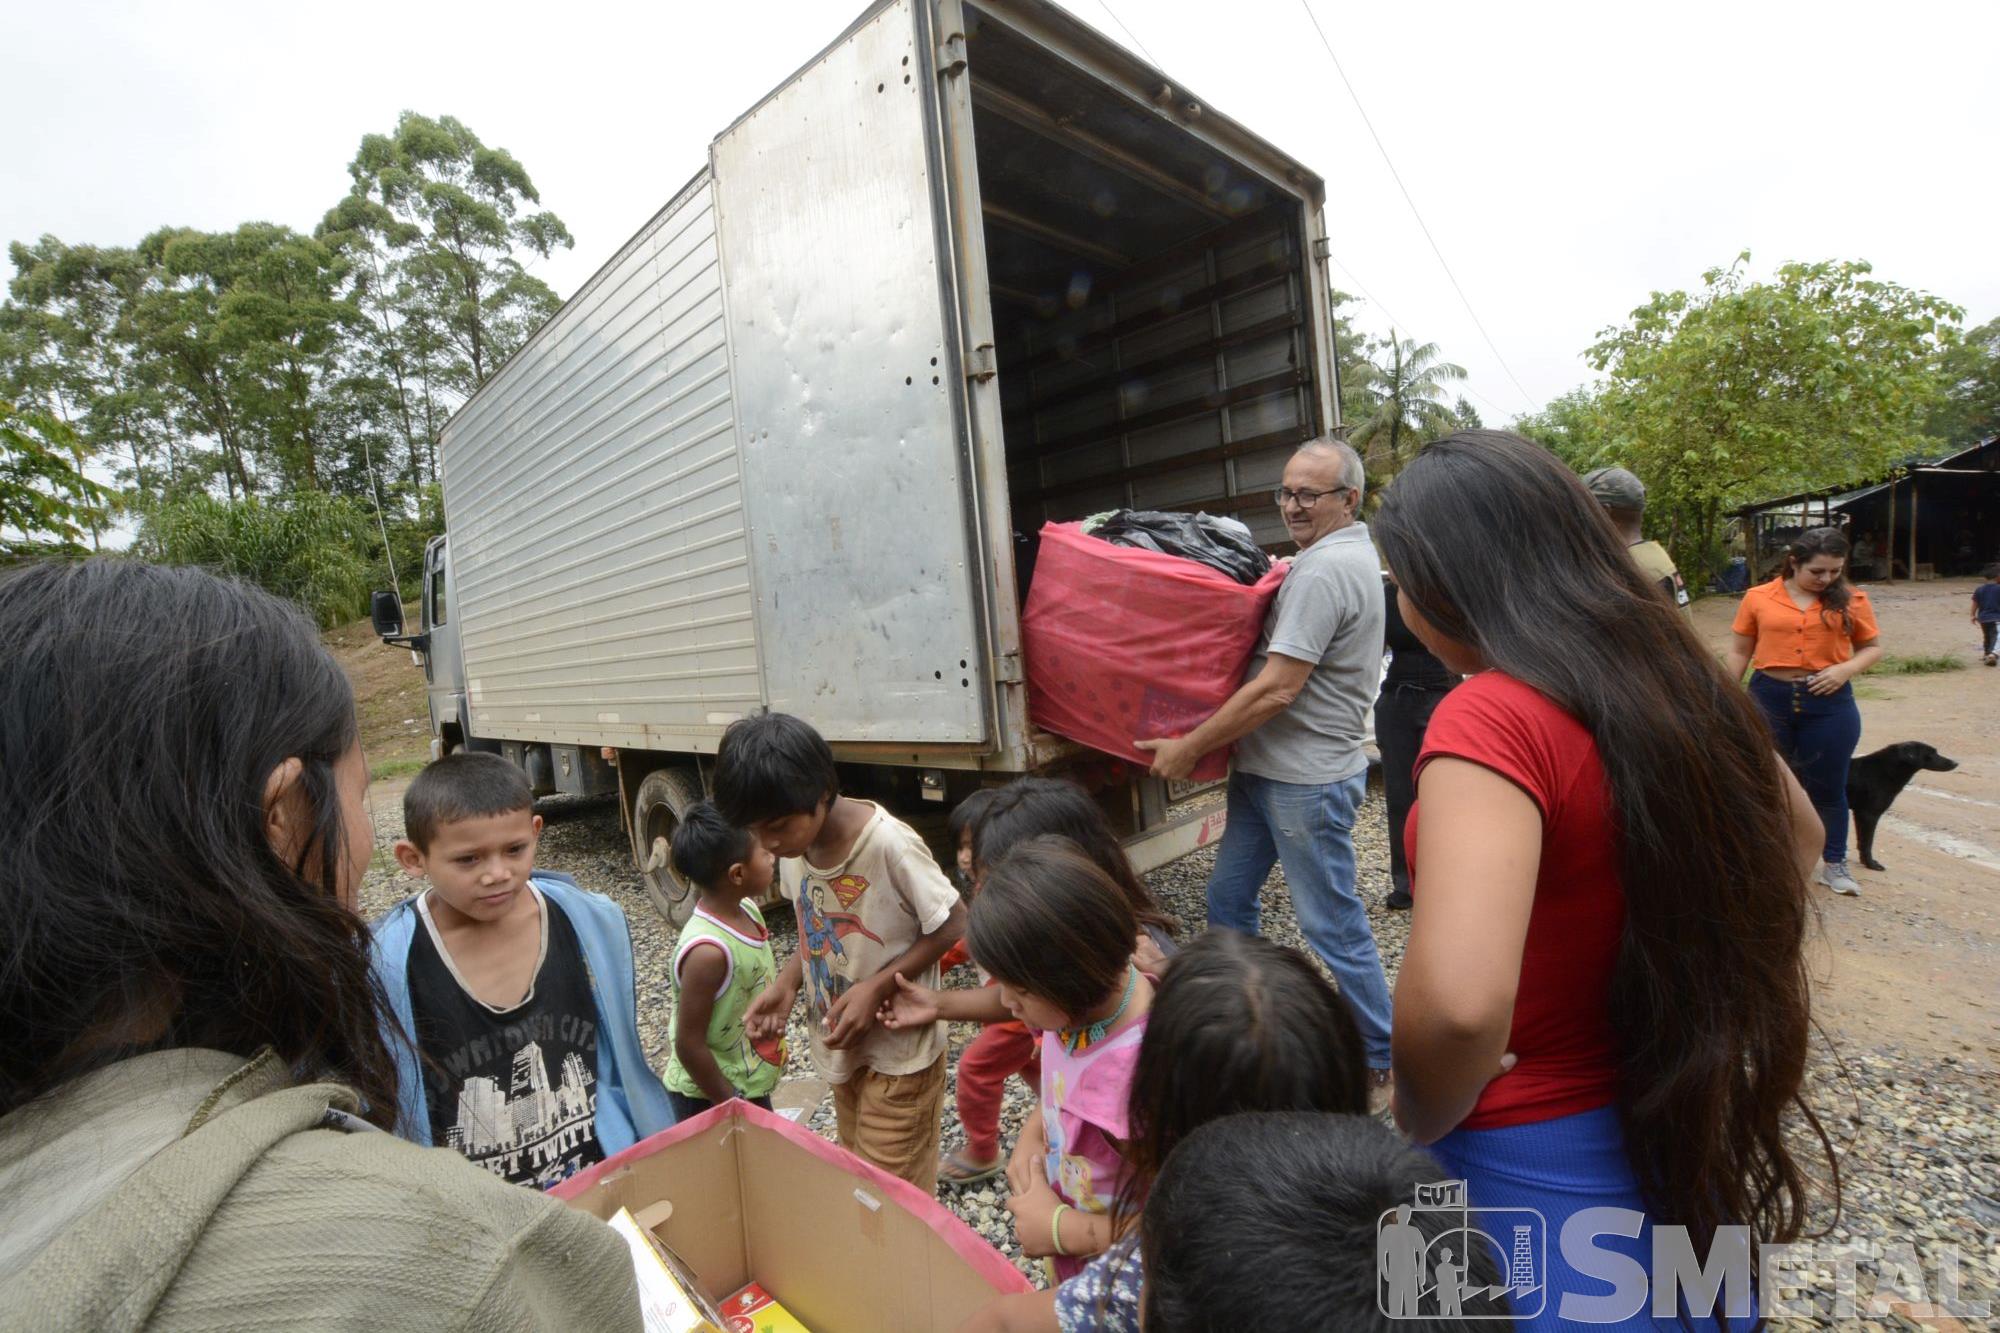 Foguinho/Imprensa SMetal, SMetal entrega cestas do Natal sem Fome em reserva indígena de Tapiraí 